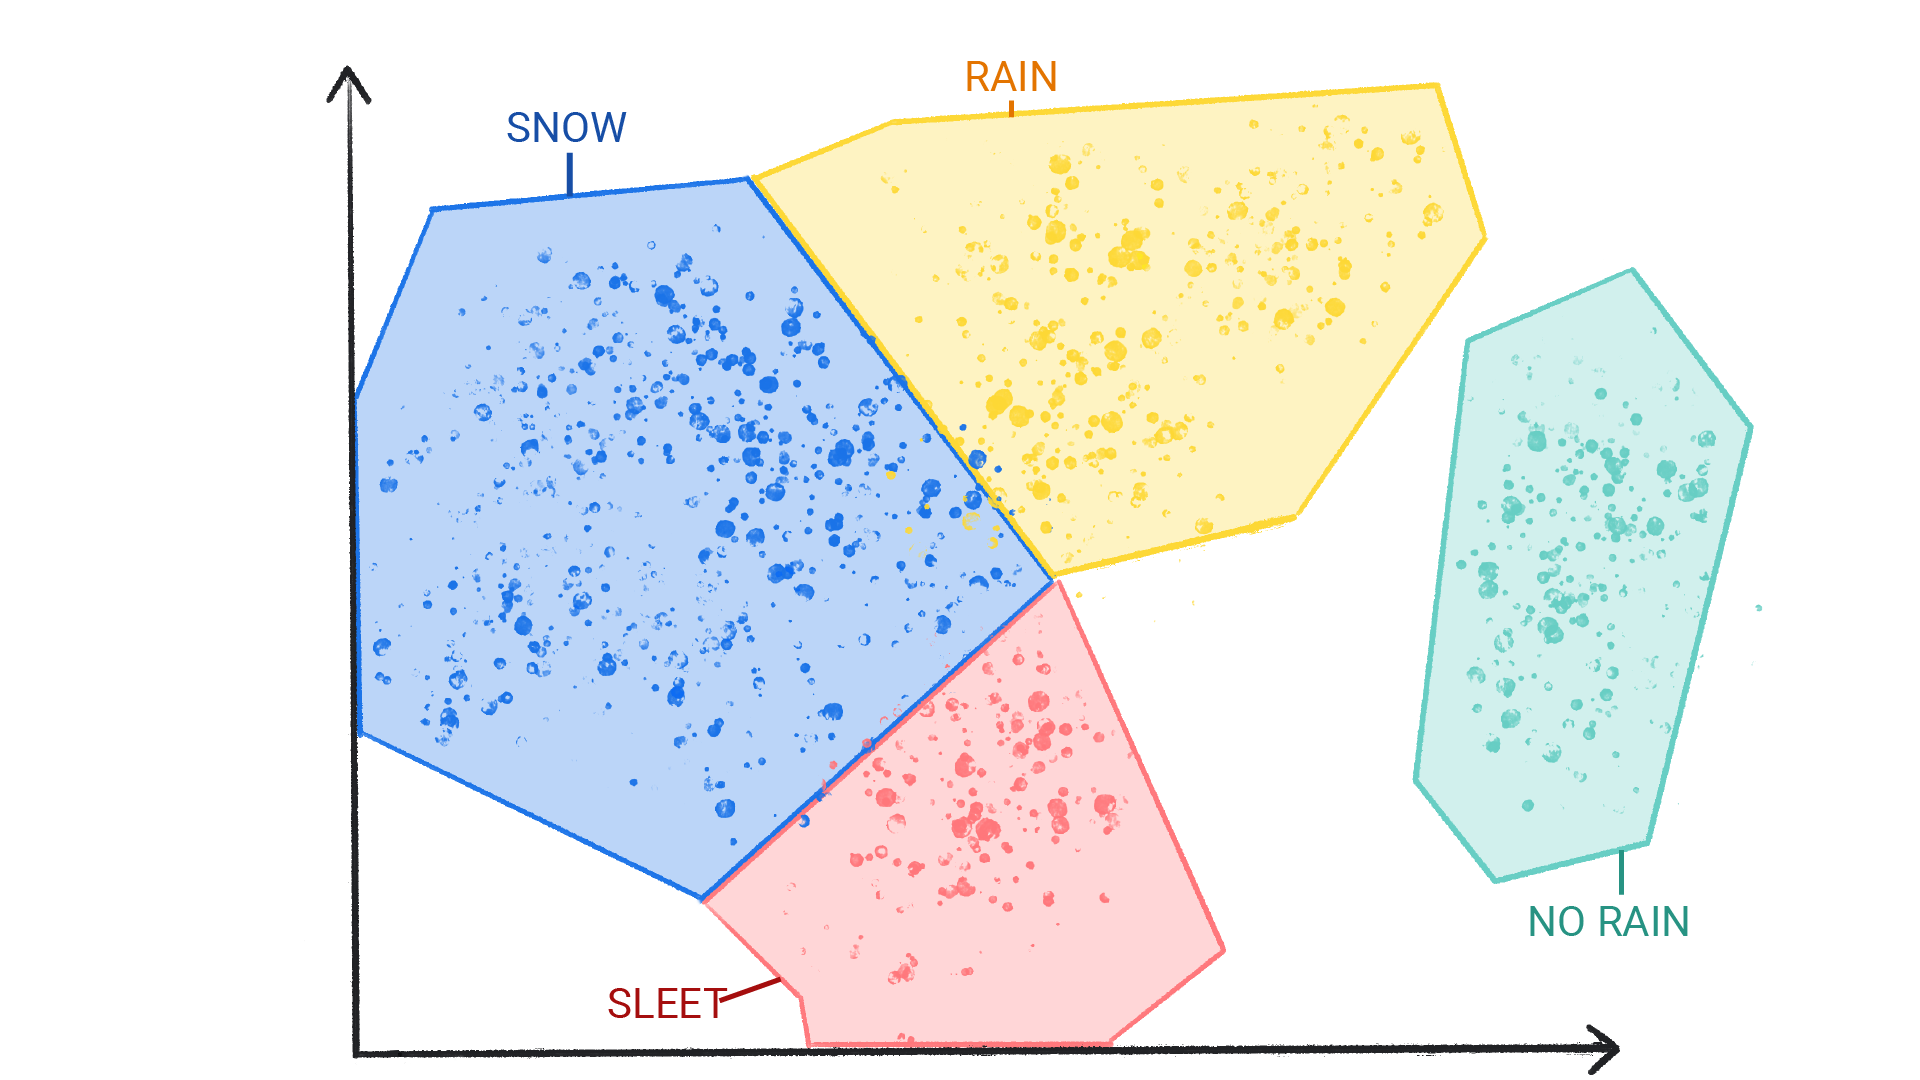 雪、雨、ひょう、雨なしとラベル付けされ、互いに境界線を囲む色付きのドットの画像。